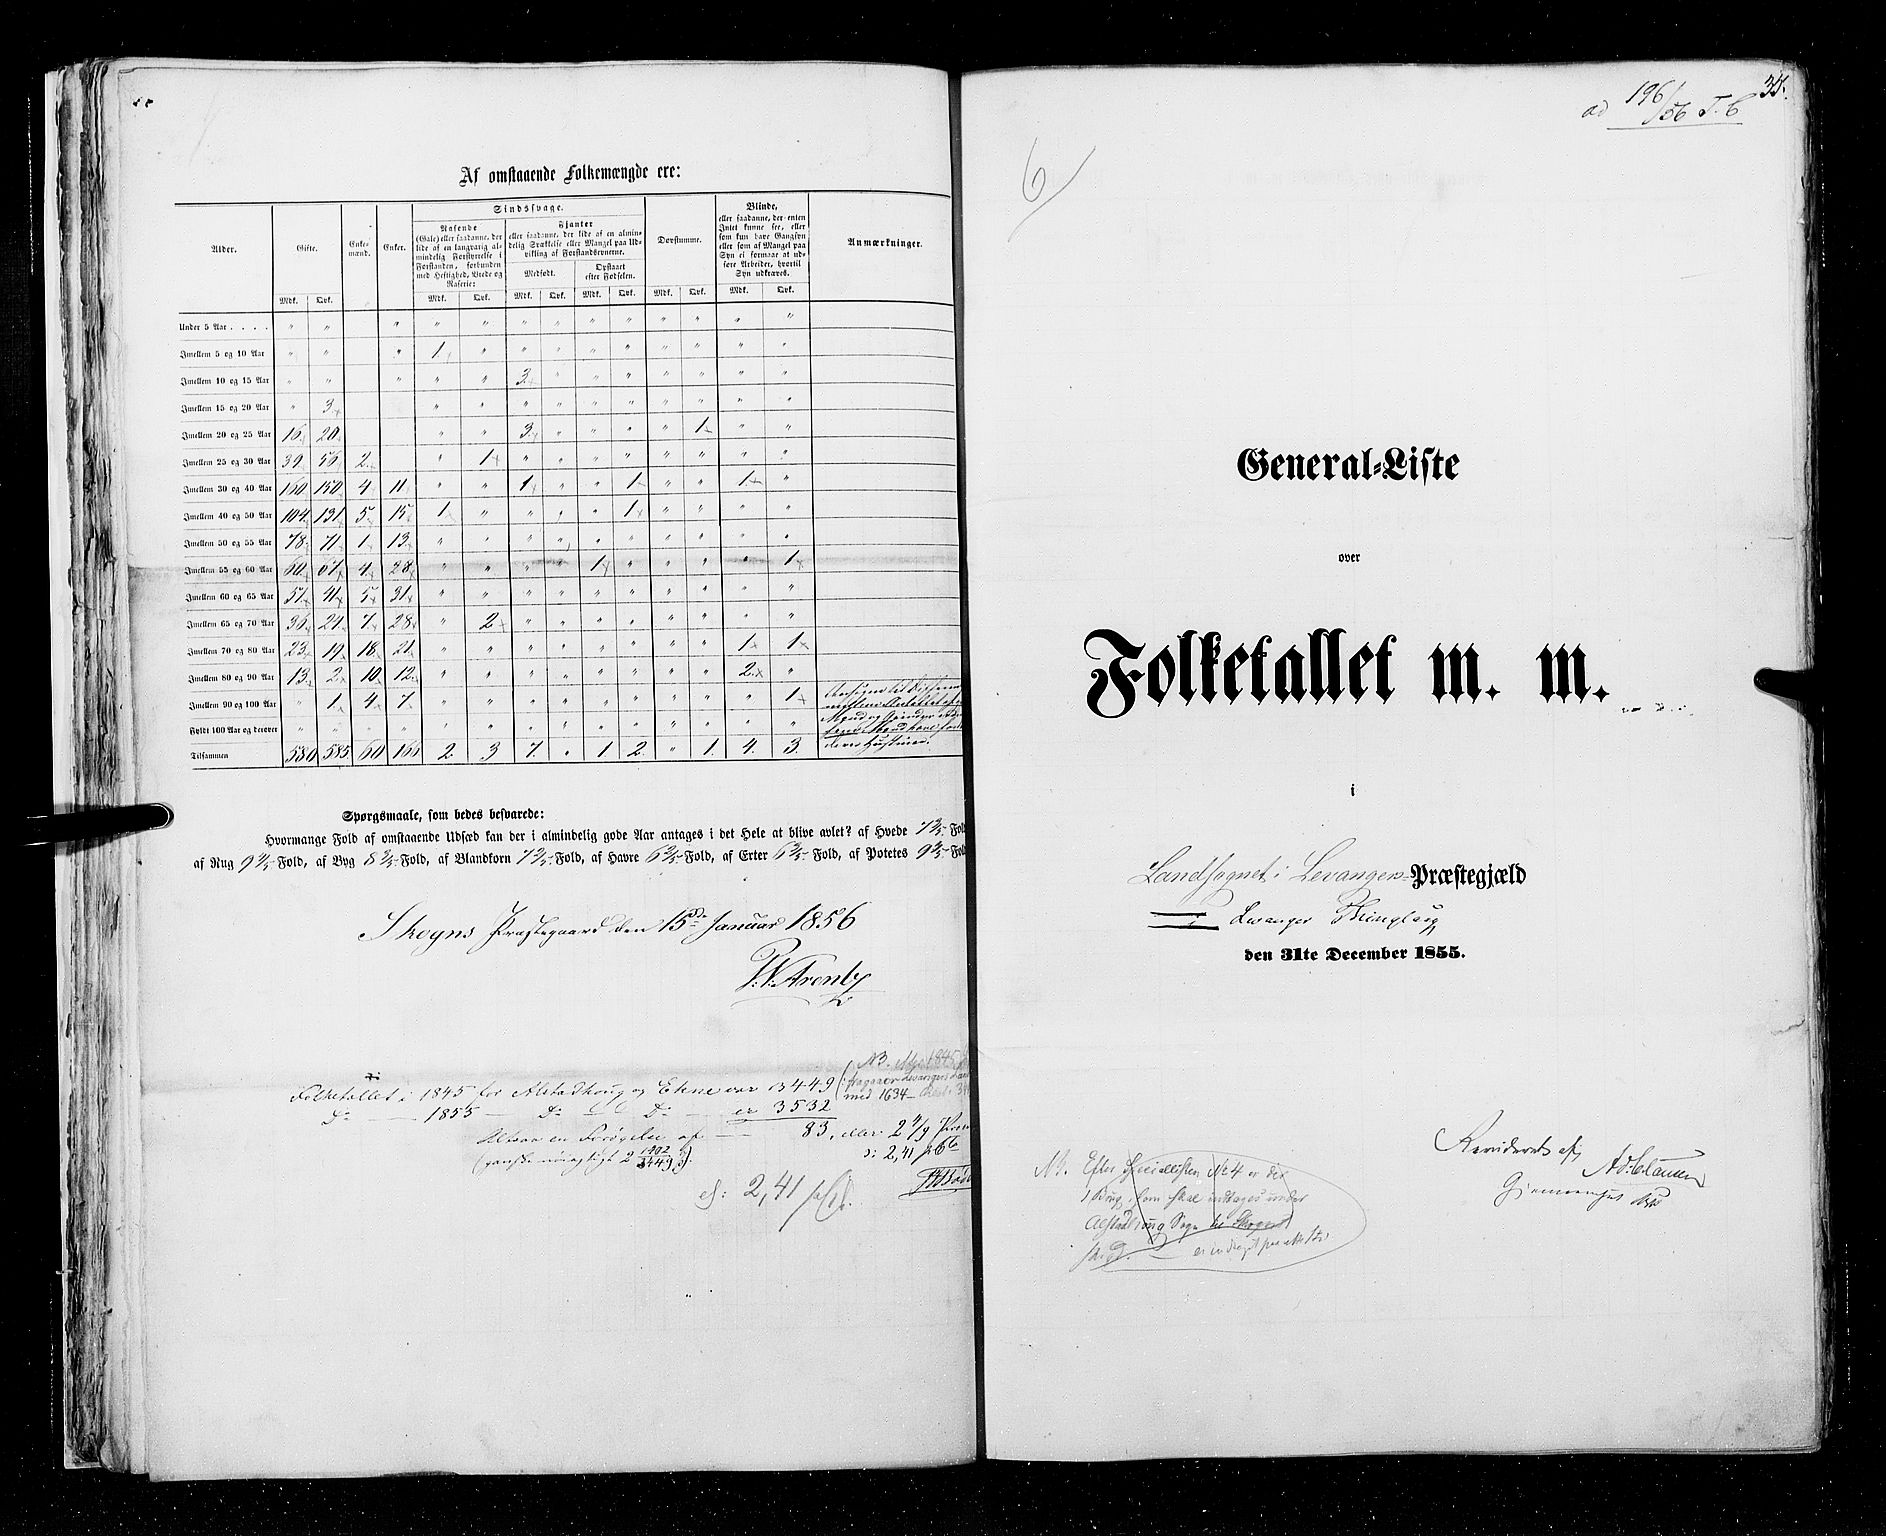 RA, Folketellingen 1855, bind 6A: Nordre Trondhjem amt og Nordland amt, 1855, s. 35